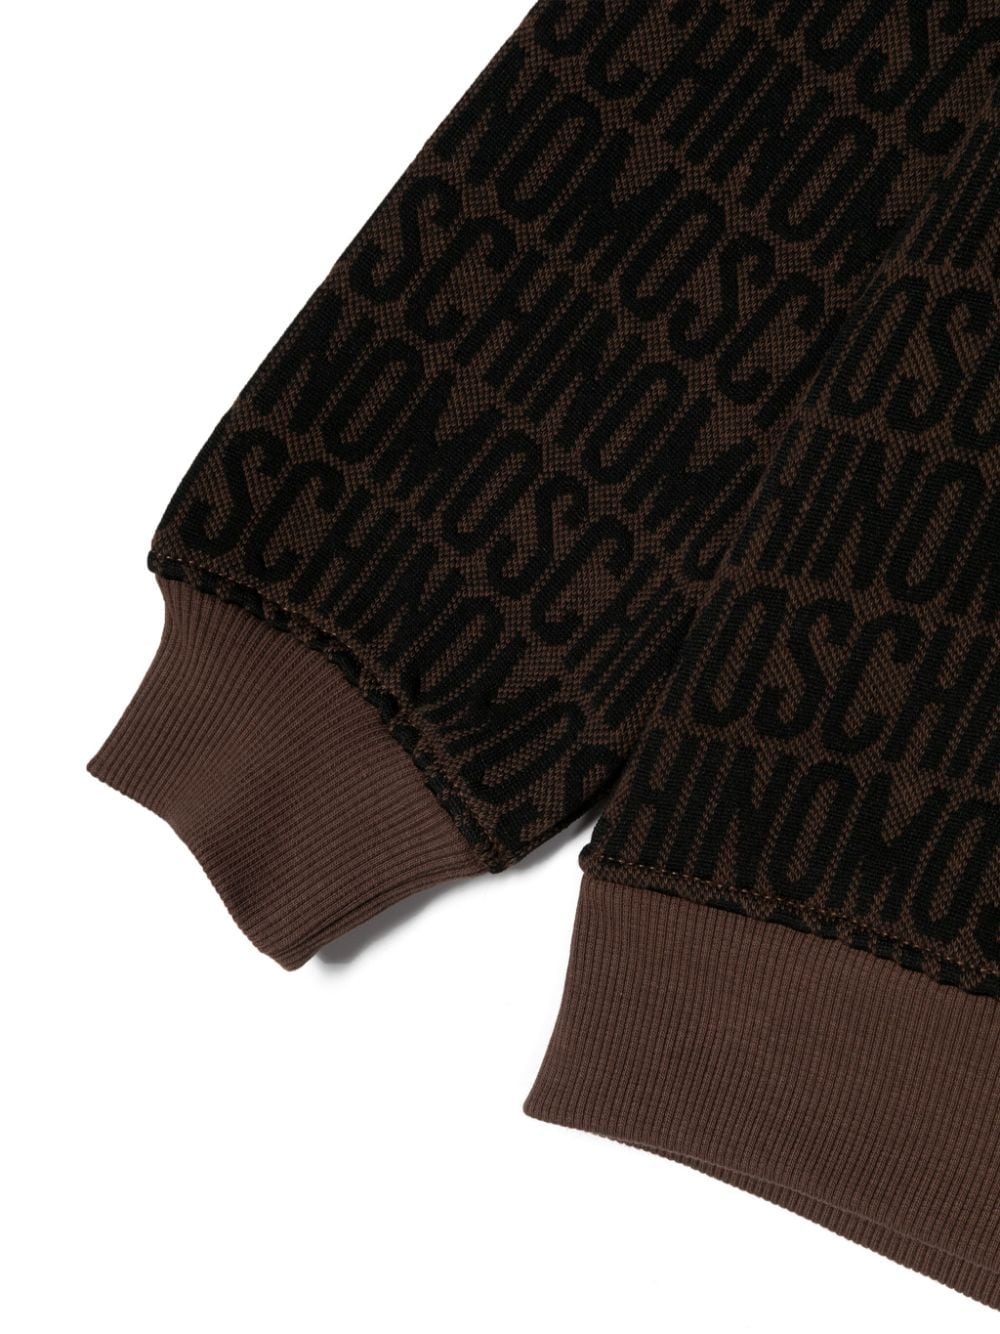 Shop Moschino Monogram-pattern Crew-neck Sweatshirt In Brown